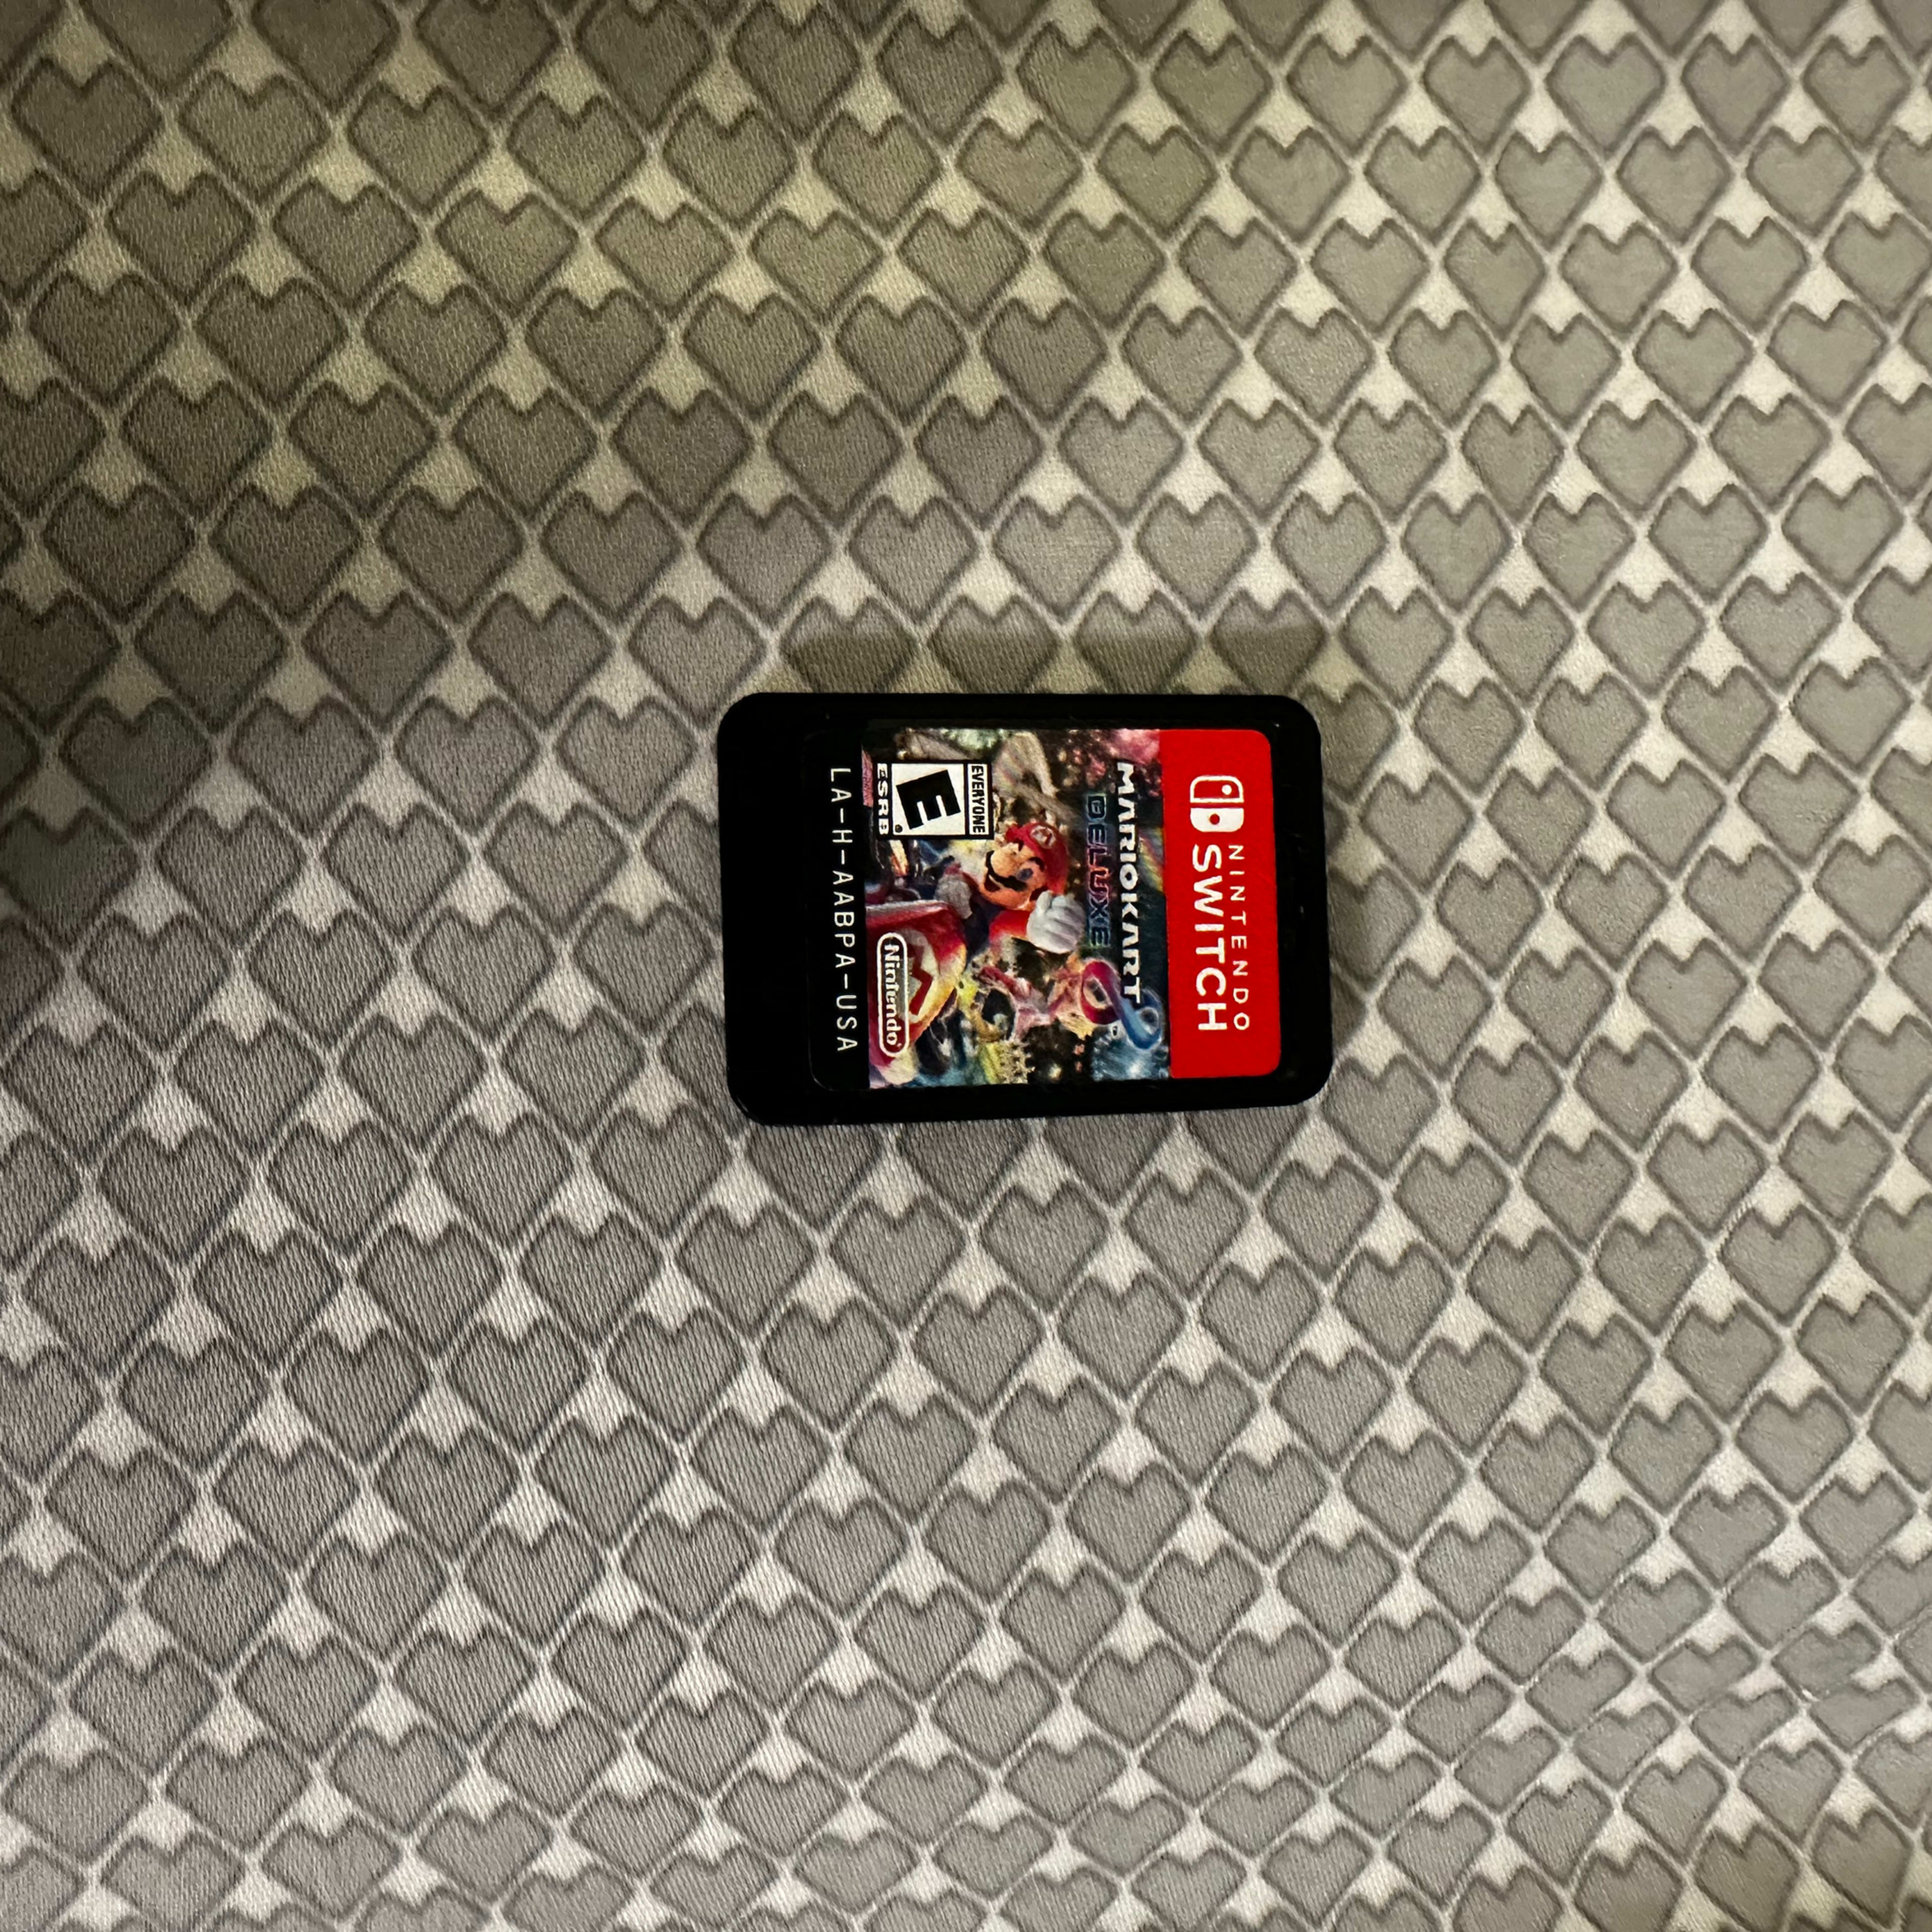 Mario Kart 8 Deluxe, Nintendo Switch Lite